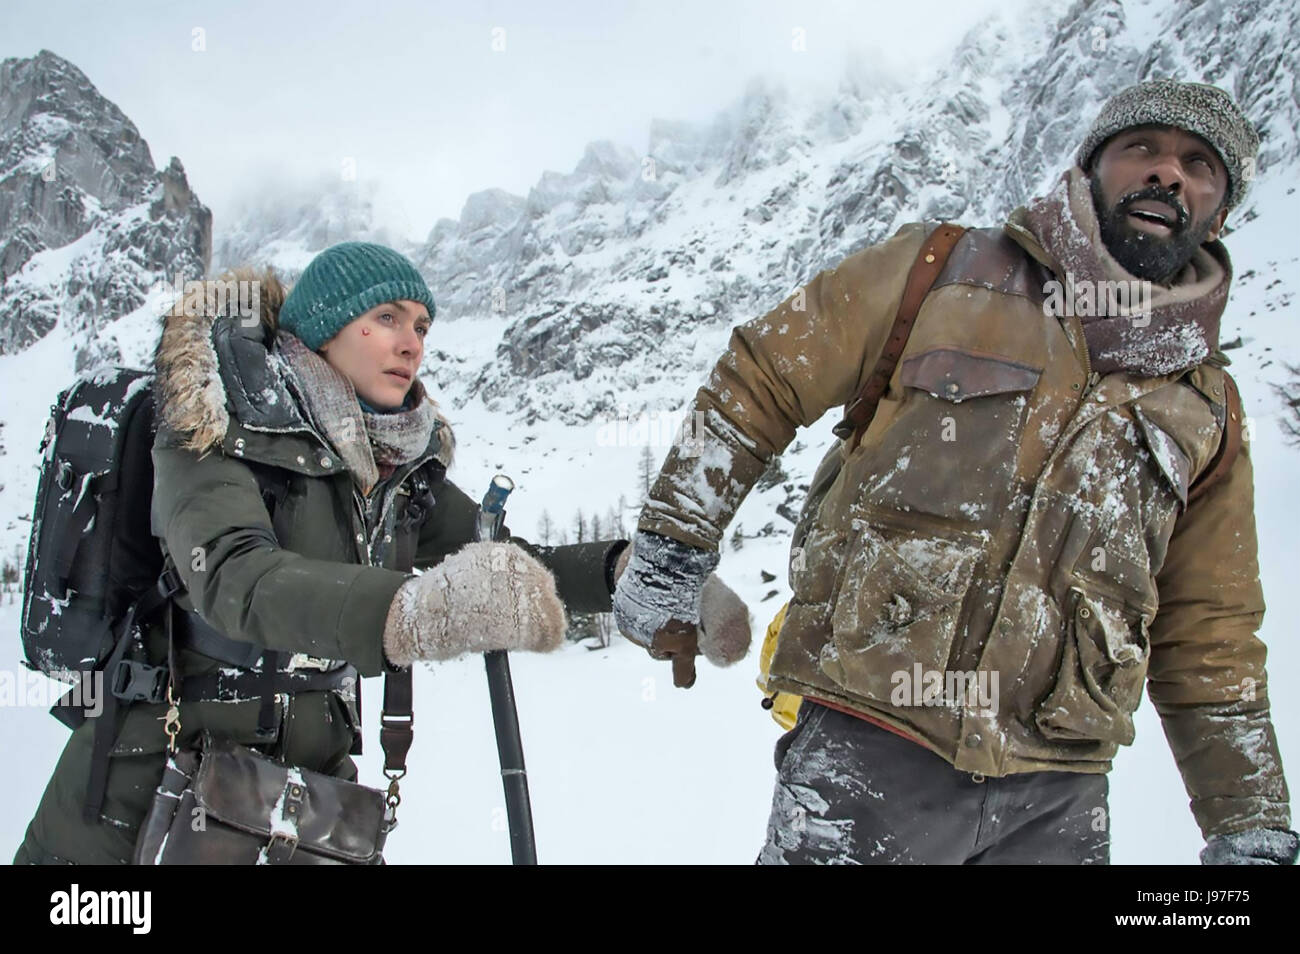 La montagne entre-nous 2017 20th Century Fox Film avec Kate Winslet et Idris Elba Banque D'Images